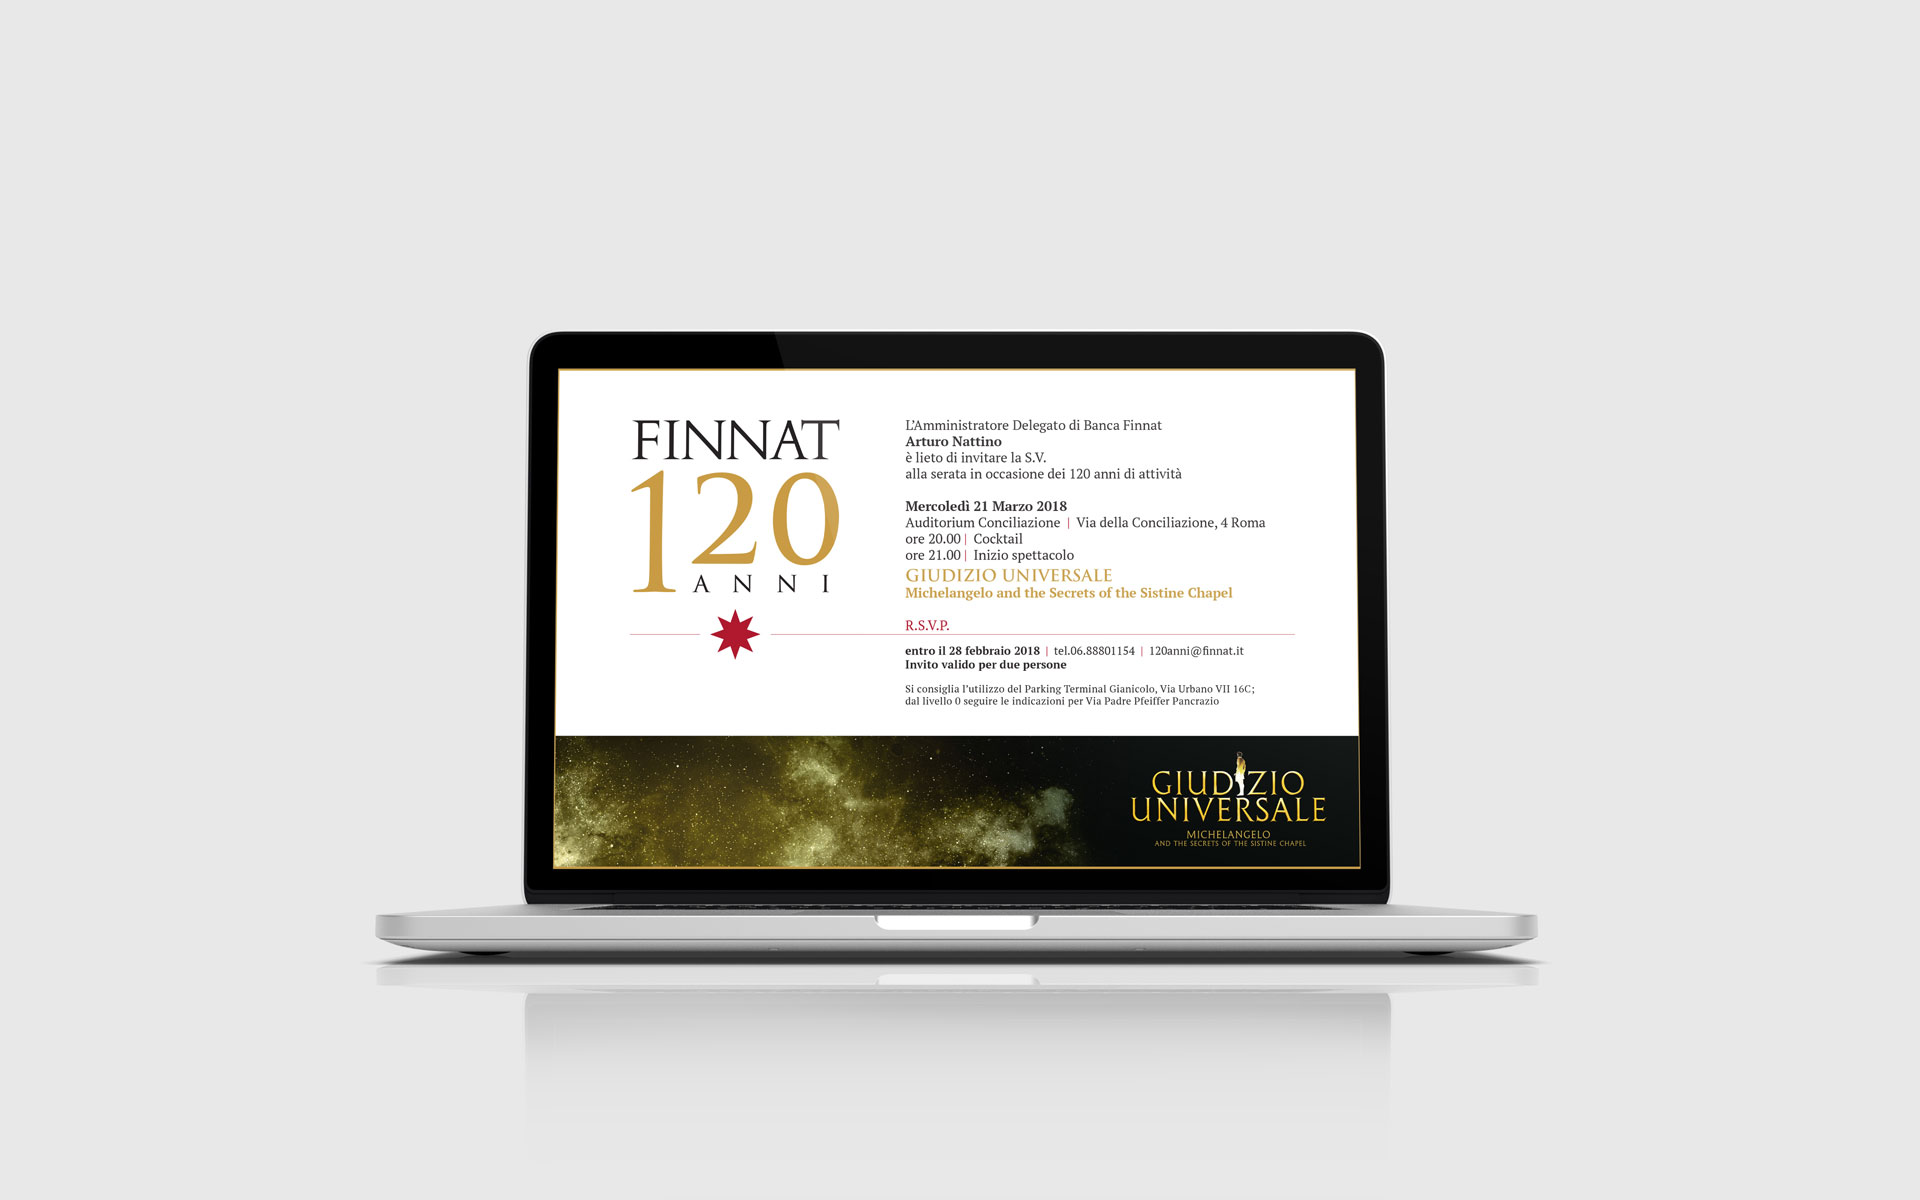 Realizzazione siti web - Finnat120anni_laptop